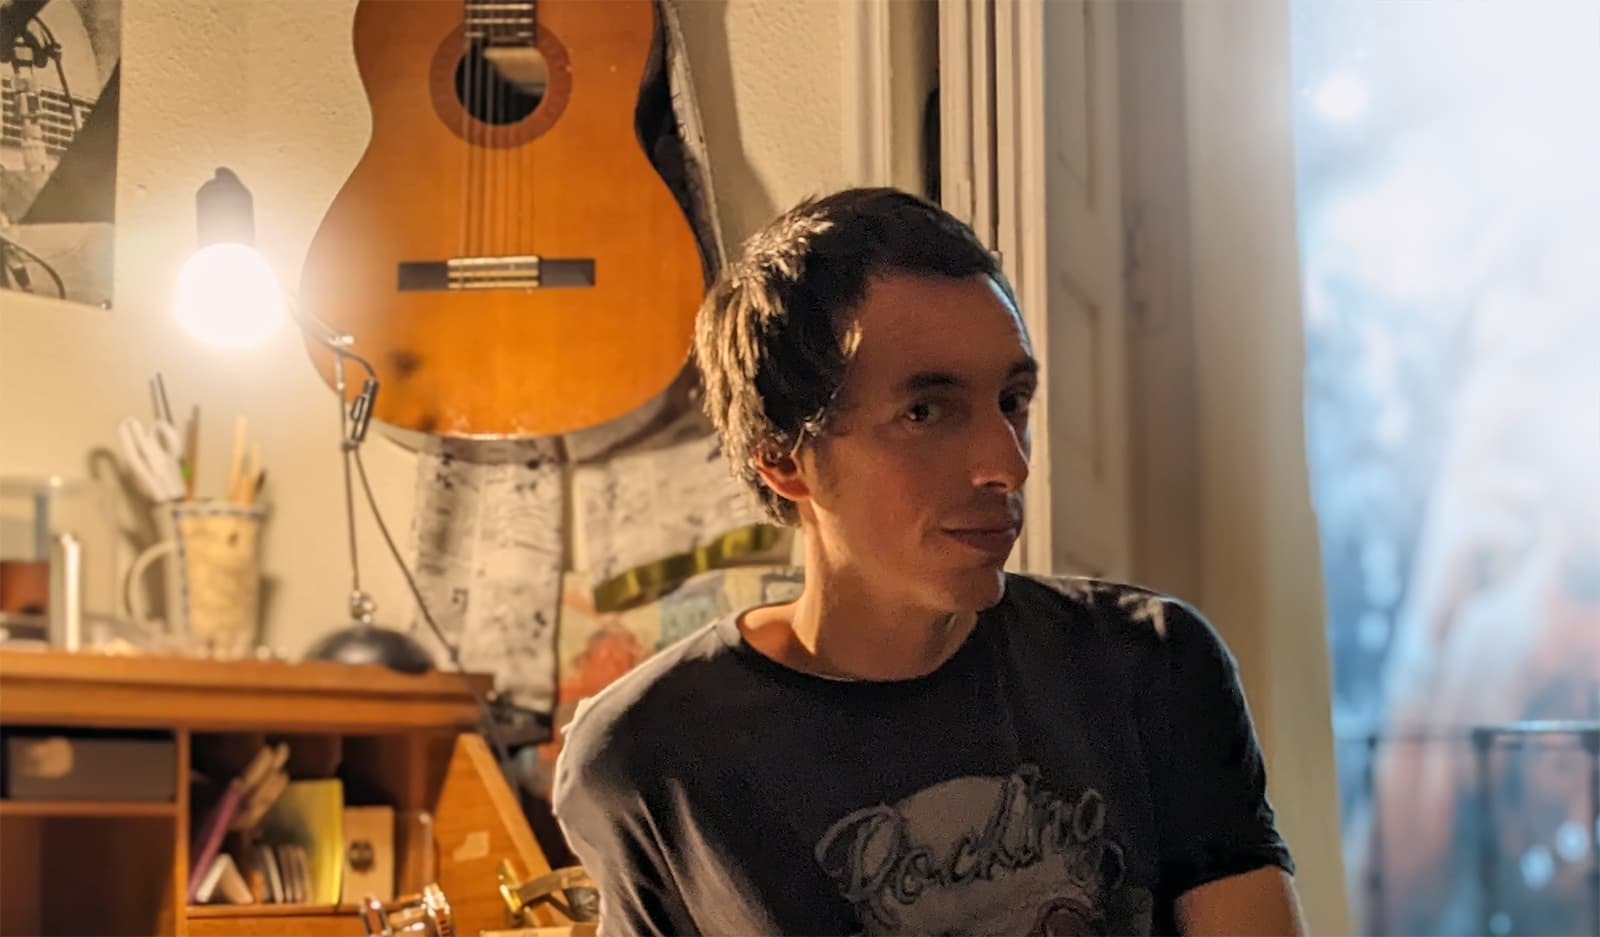 Alberto en su estudio con su guitarra colgada en el fondo, mirando a la cámera, con algo que puede ser una sonrisa